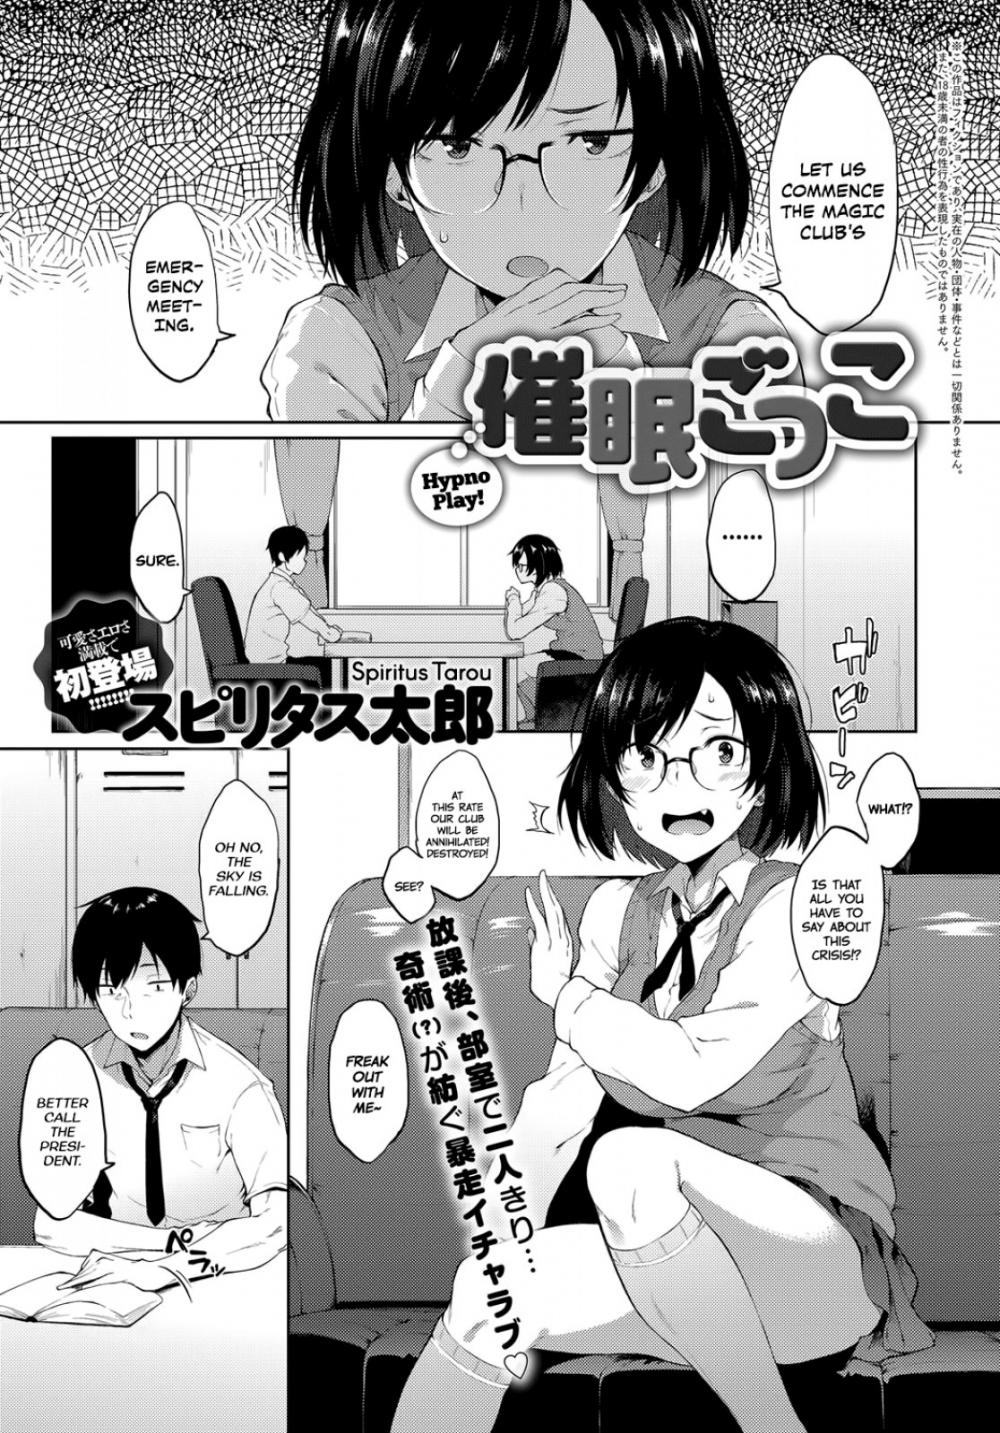 Hentai Manga Comic-Hypno Play!-Read-1